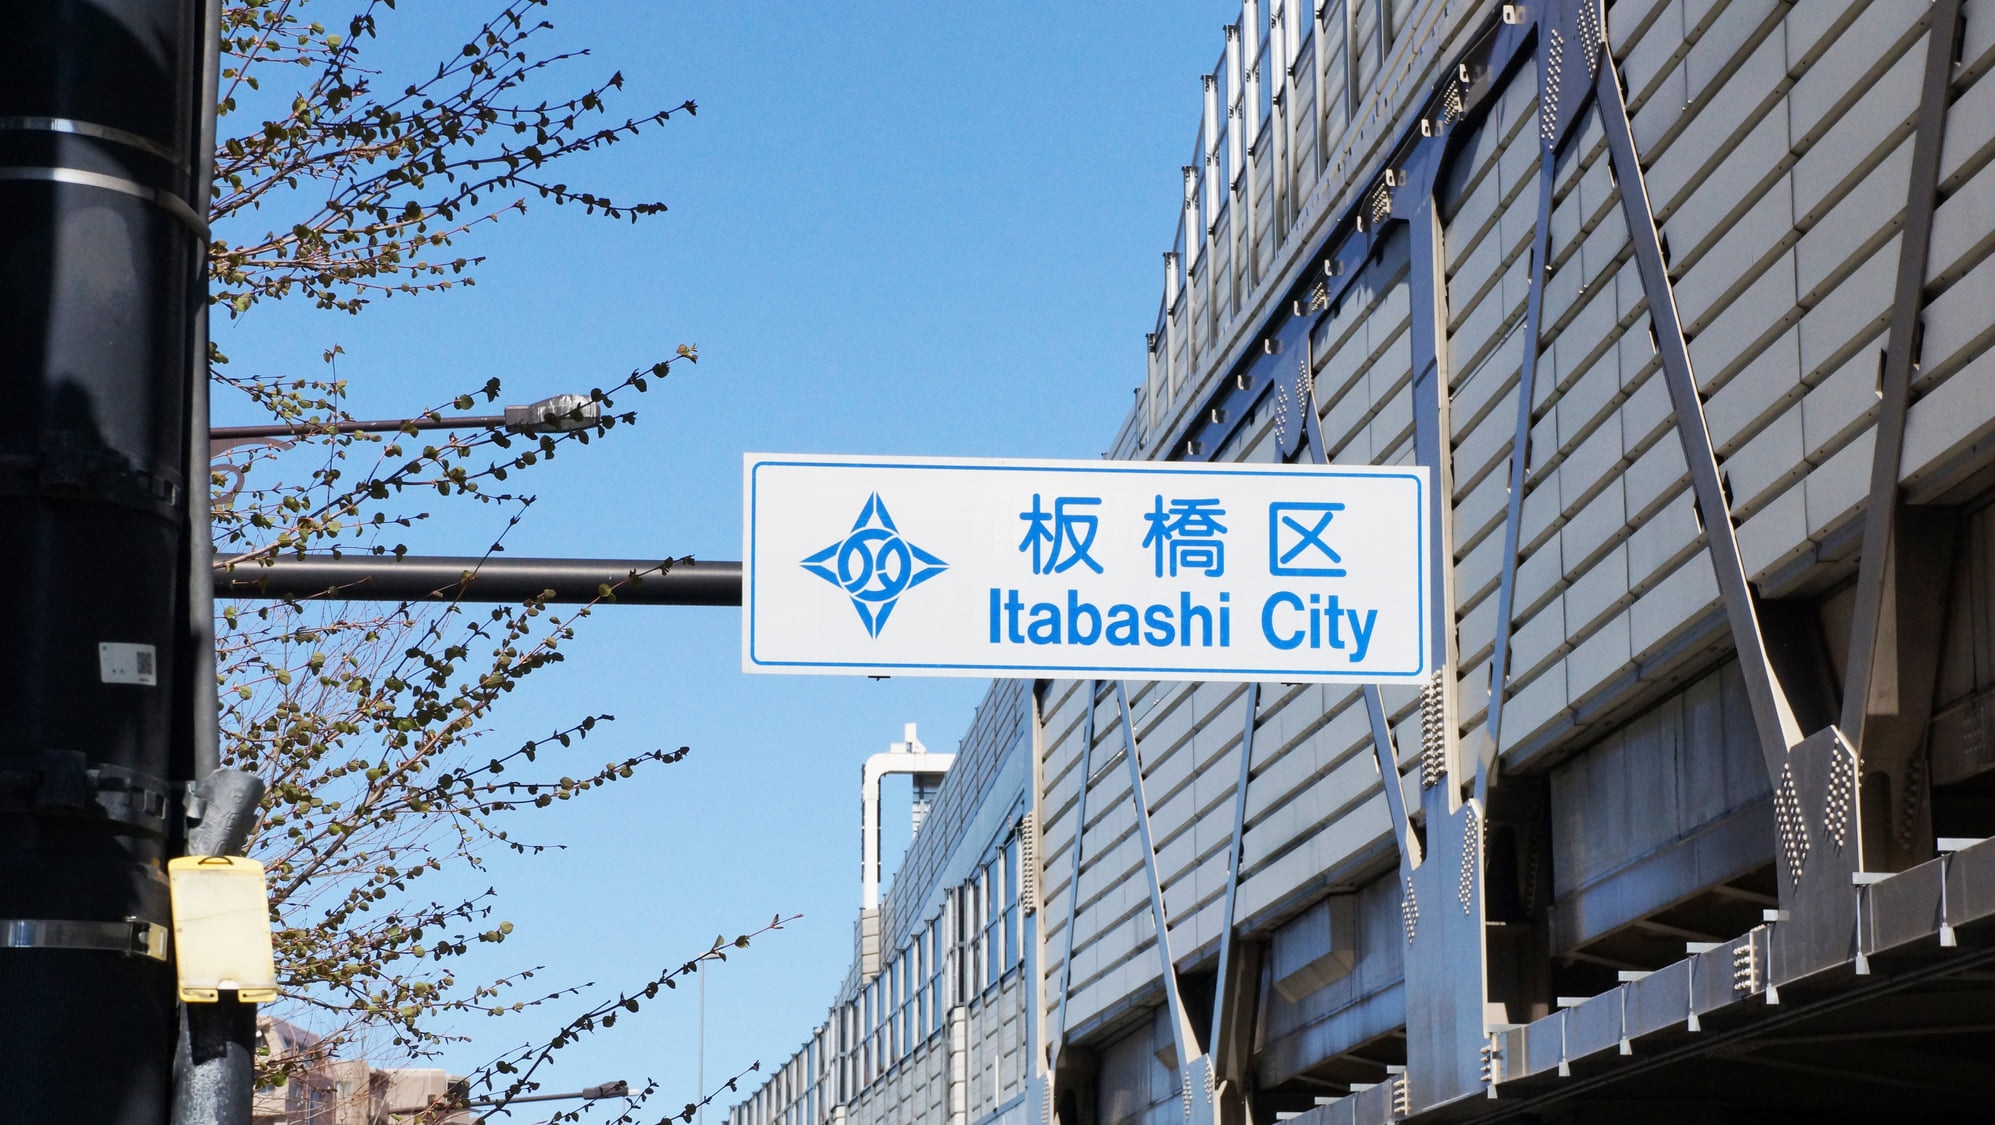 東京 板橋区のホテル7選 宿泊費を節約したい人におすすめ Skyticket 観光ガイド